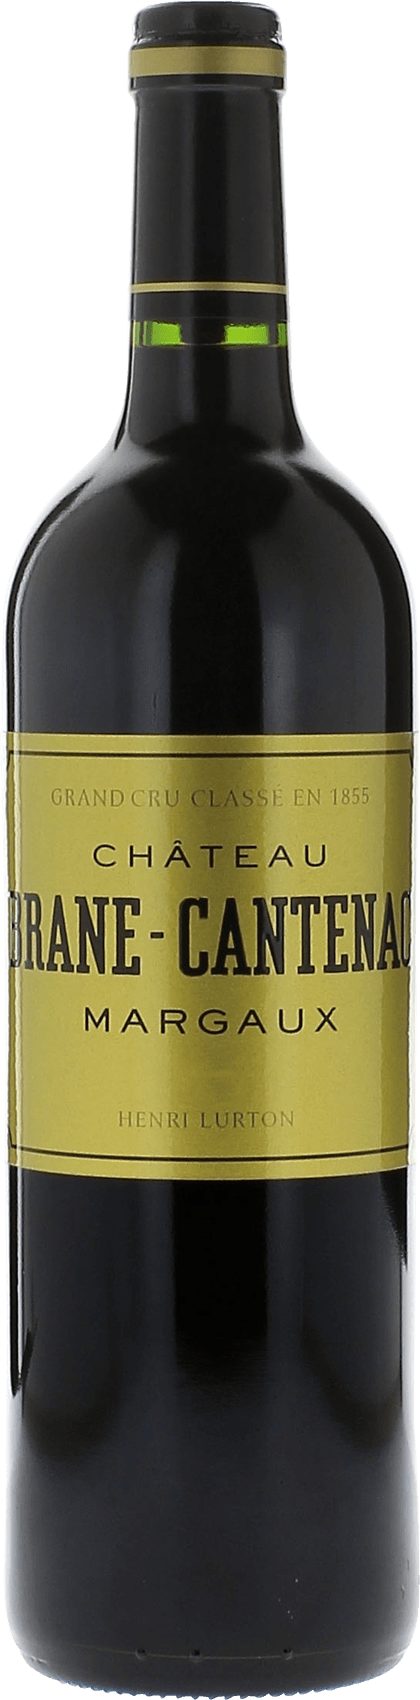 Brane cantenac 2010 2me Grand cru class Margaux, Bordeaux rouge